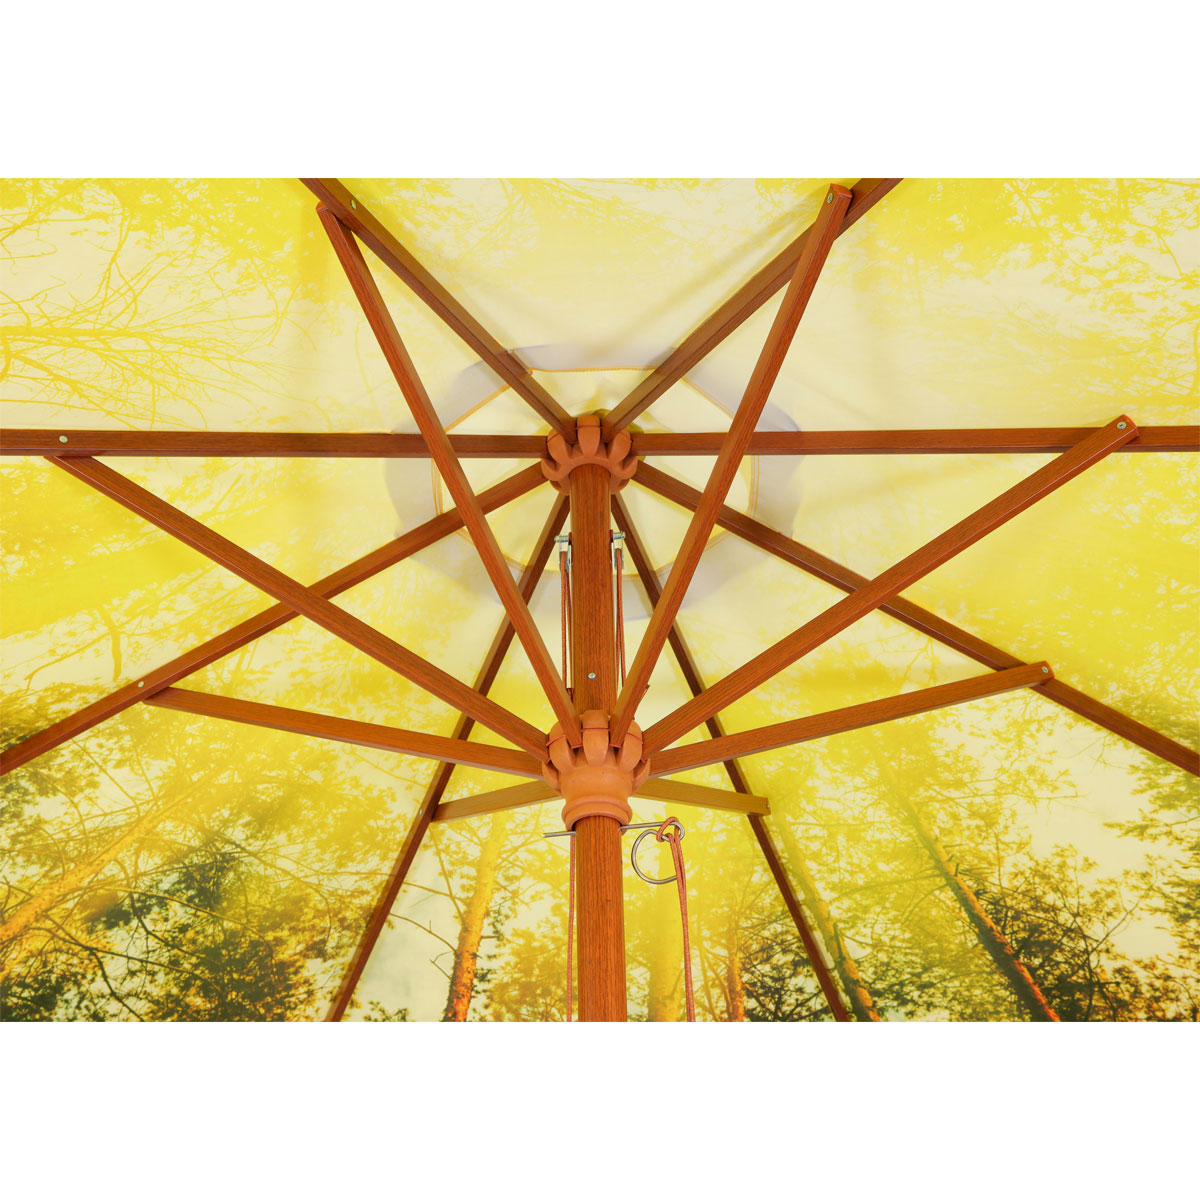 Schneider Schirme Sonnenschirm Malaga Durchmesser 300 cm Forest | sonstige  | 526254